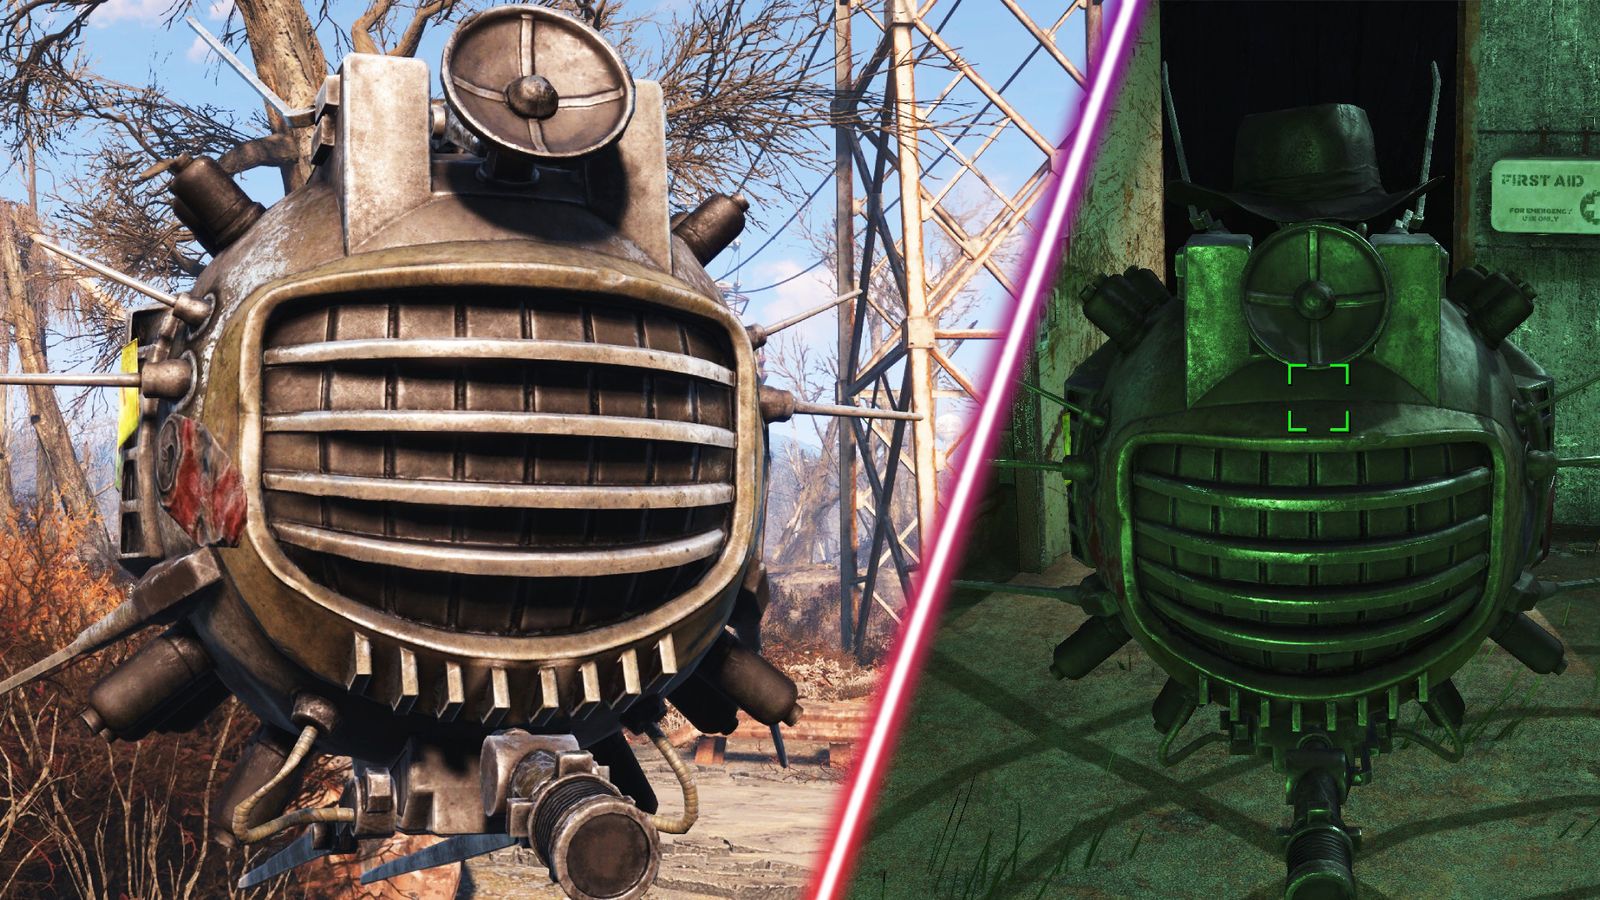 Falllout New Vegas' ED-E in Fallout 4.